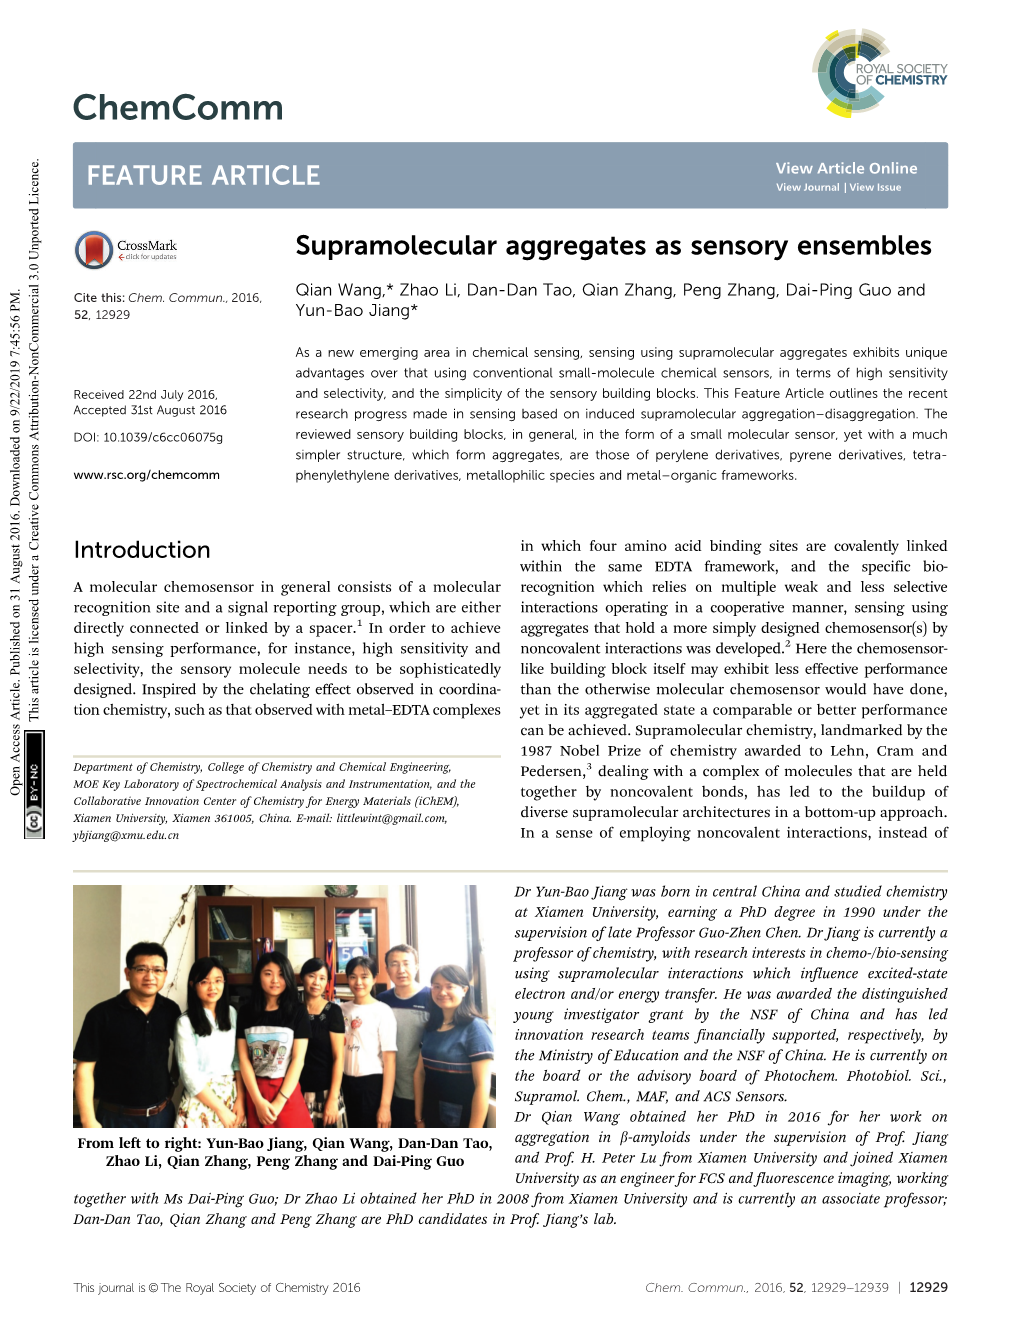 Supramolecular Aggregates As Sensory Ensembles